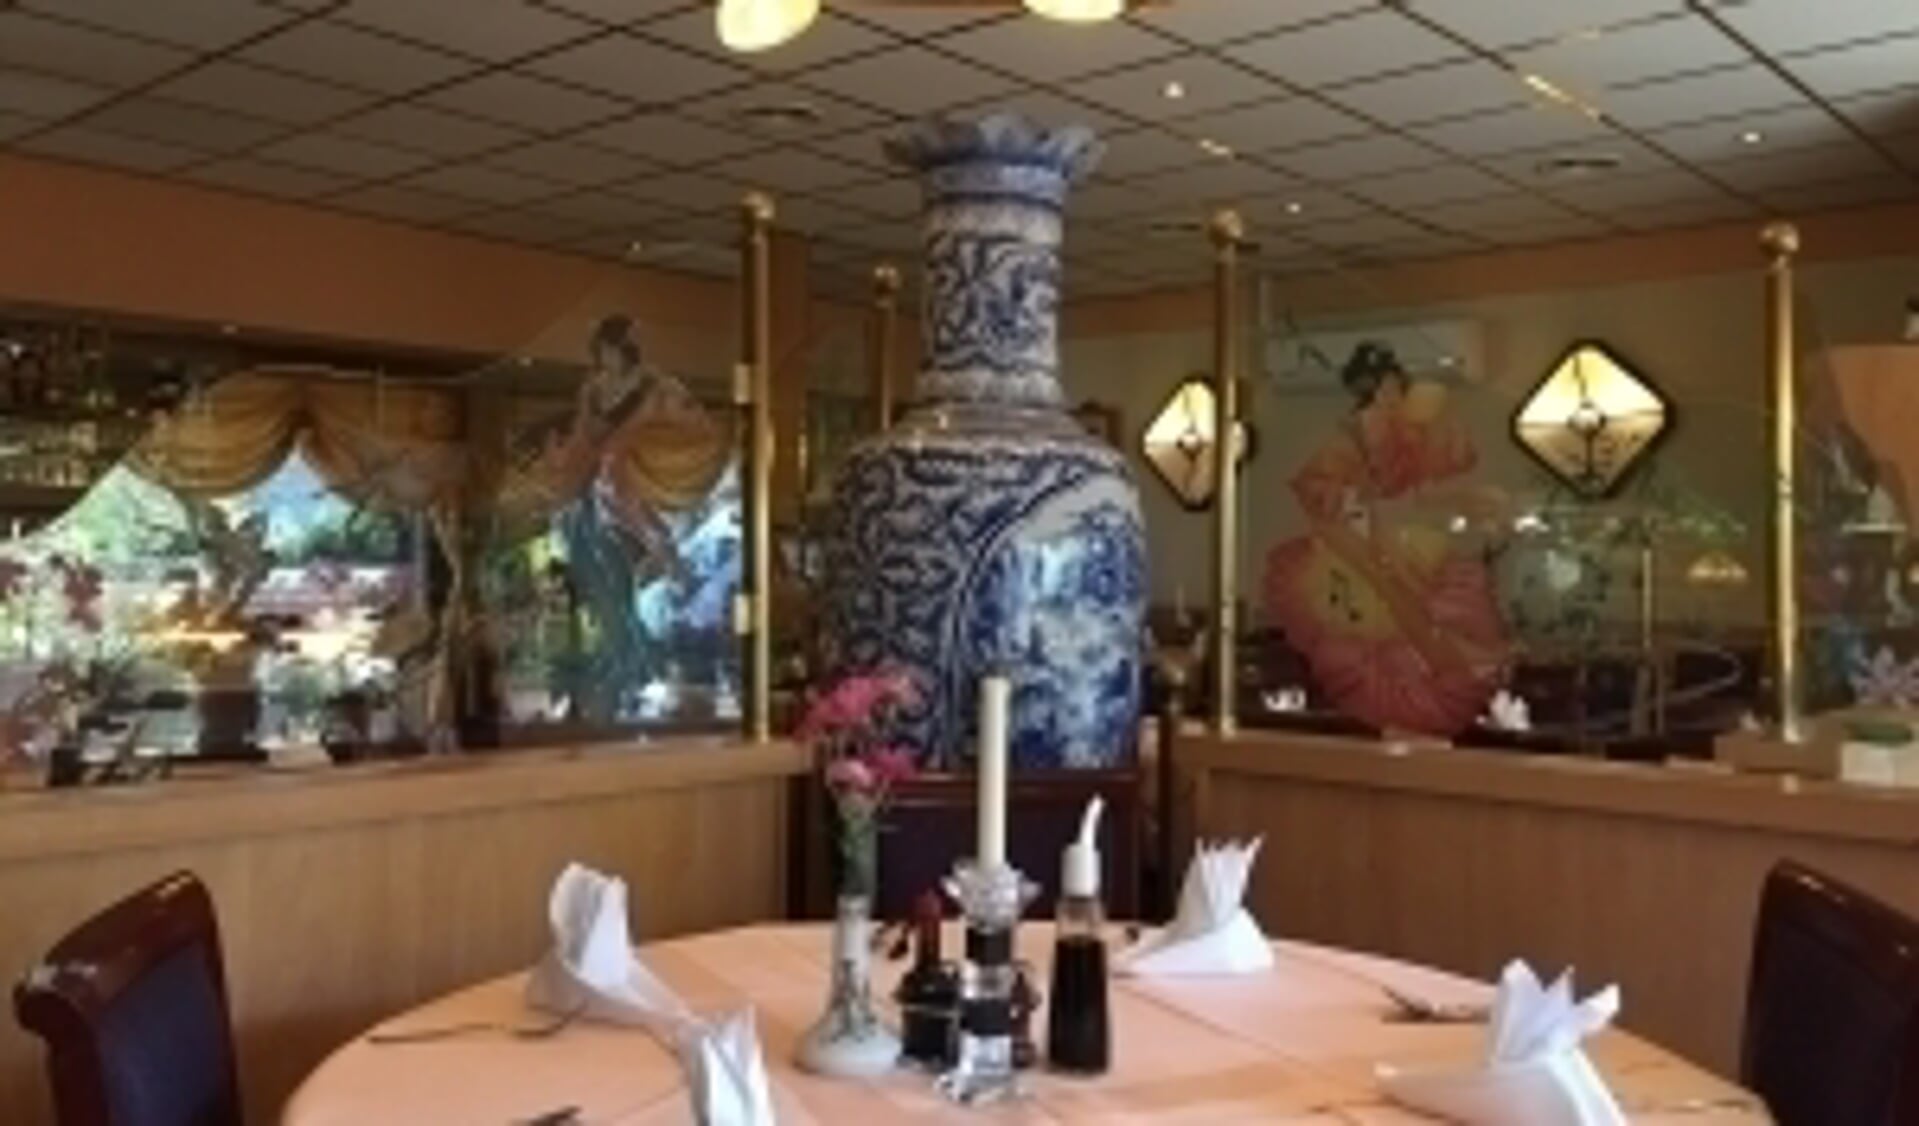 Het restaurant China Garden is dagelijks geopend, ook voor afhaal